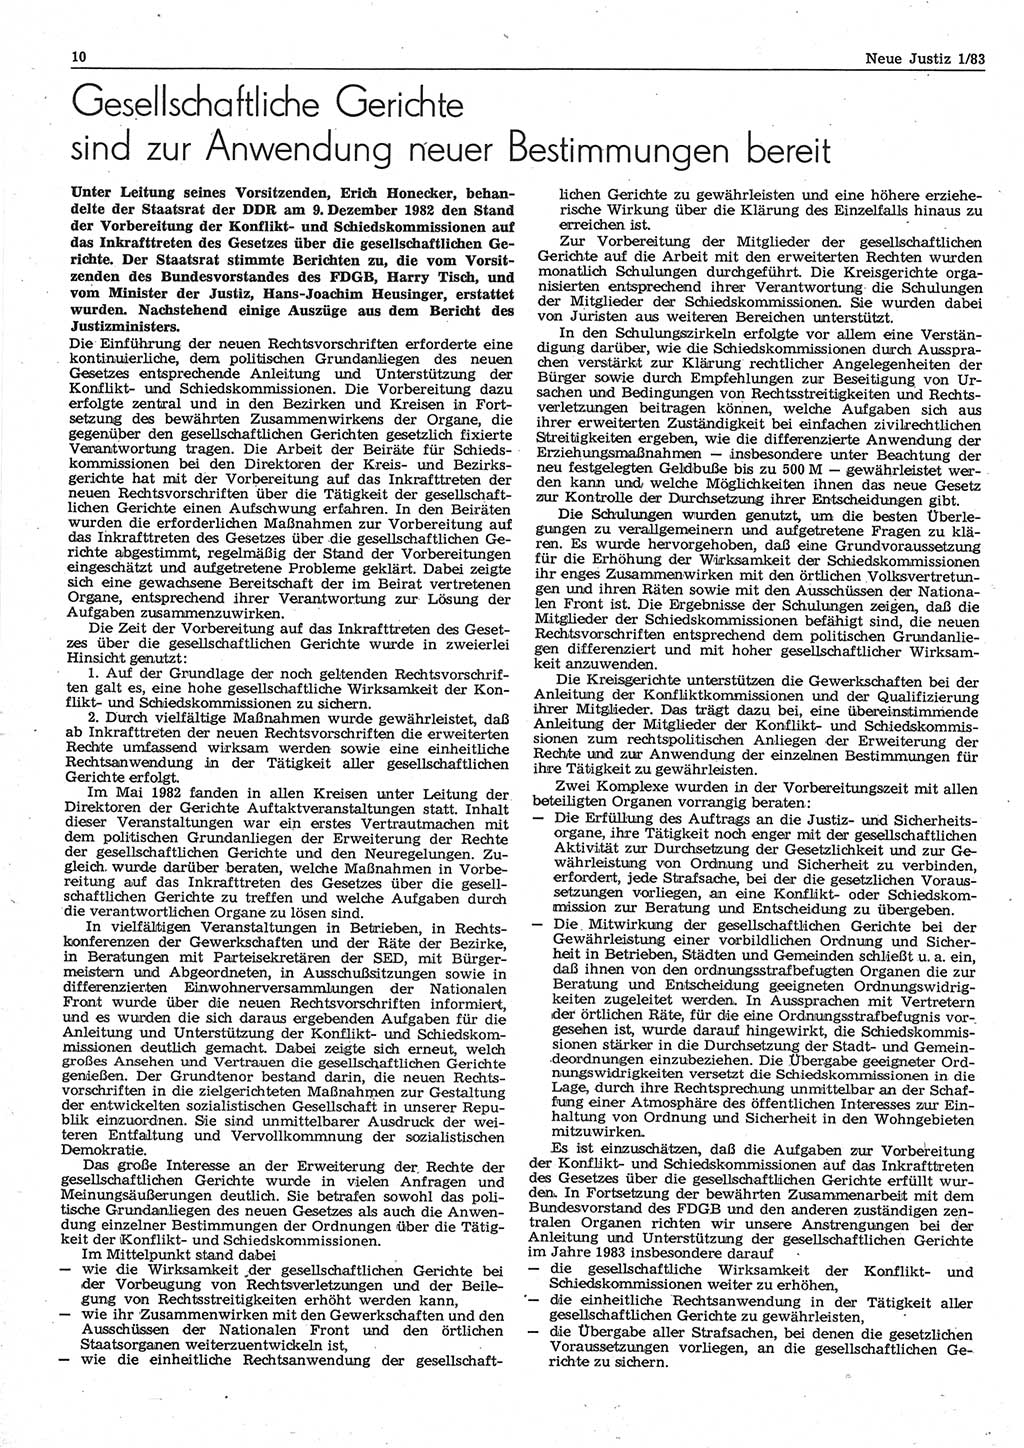 Neue Justiz (NJ), Zeitschrift für sozialistisches Recht und Gesetzlichkeit [Deutsche Demokratische Republik (DDR)], 37. Jahrgang 1983, Seite 10 (NJ DDR 1983, S. 10)